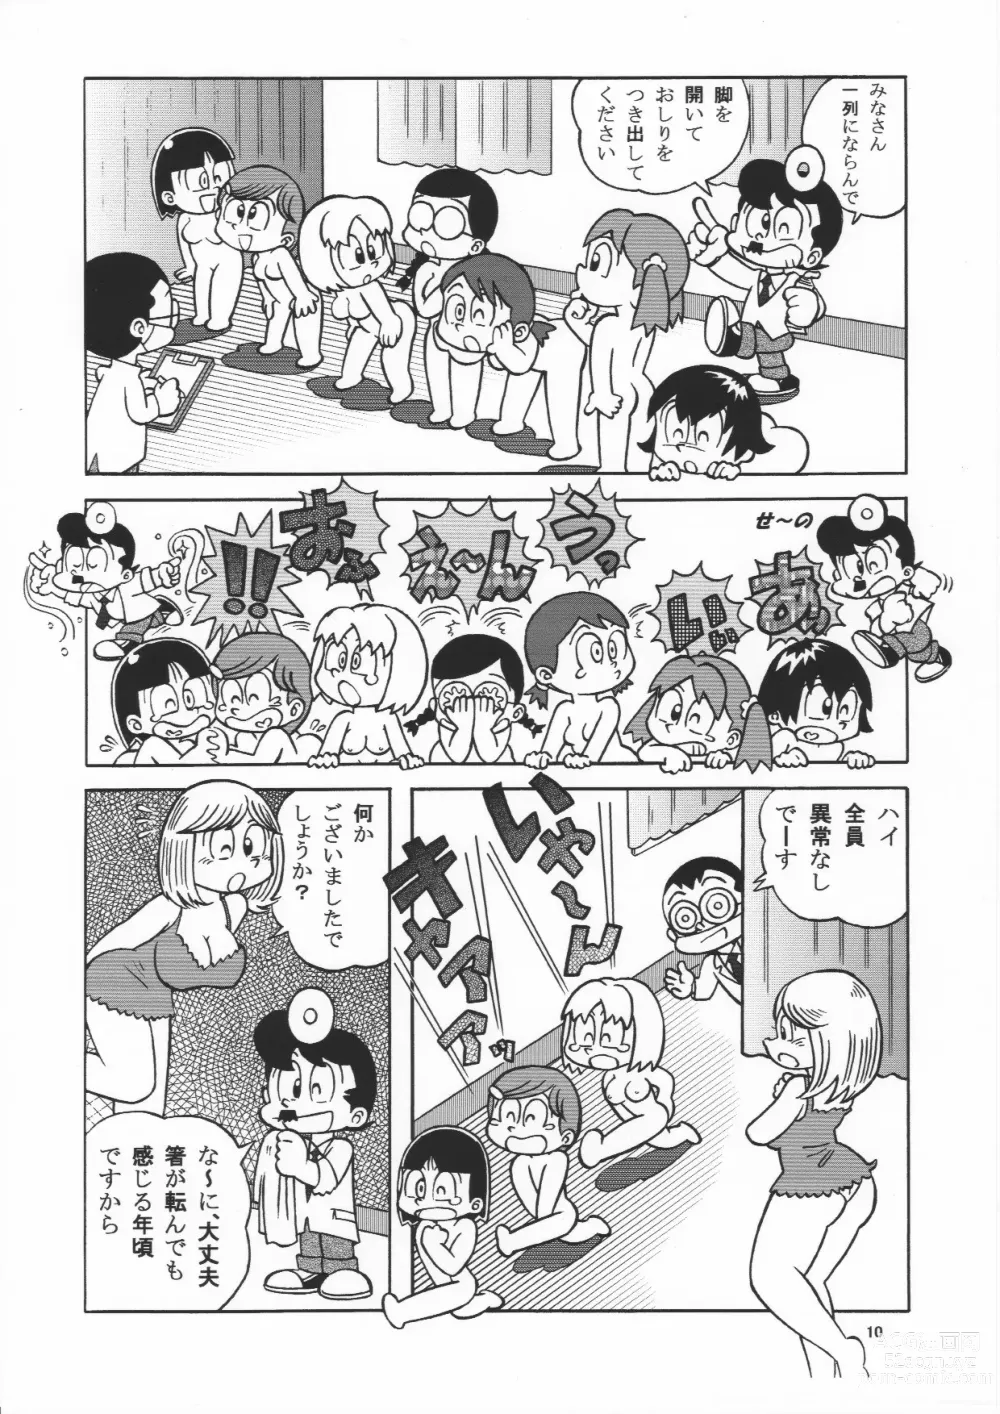 Page 10 of doujinshi (Maicching Machiko Sensei)